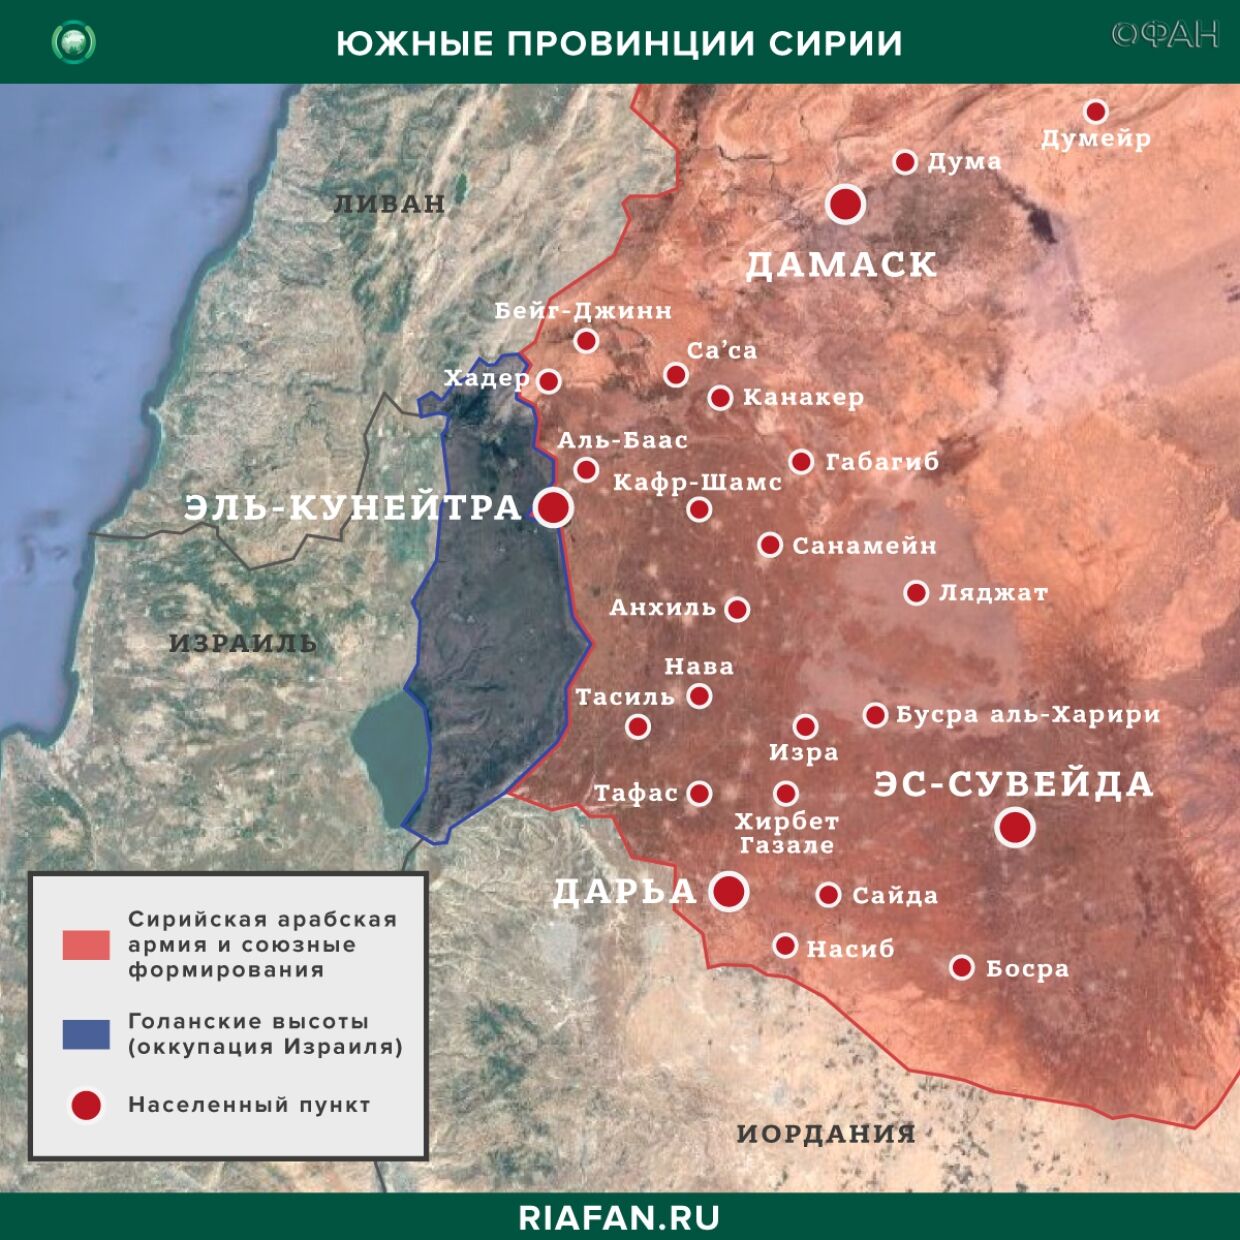 Сирия новости 10 апреля 22.30: саперы САА зачистили два гектара территории на юго-западе САР, в Ракке найдено тело пастуха